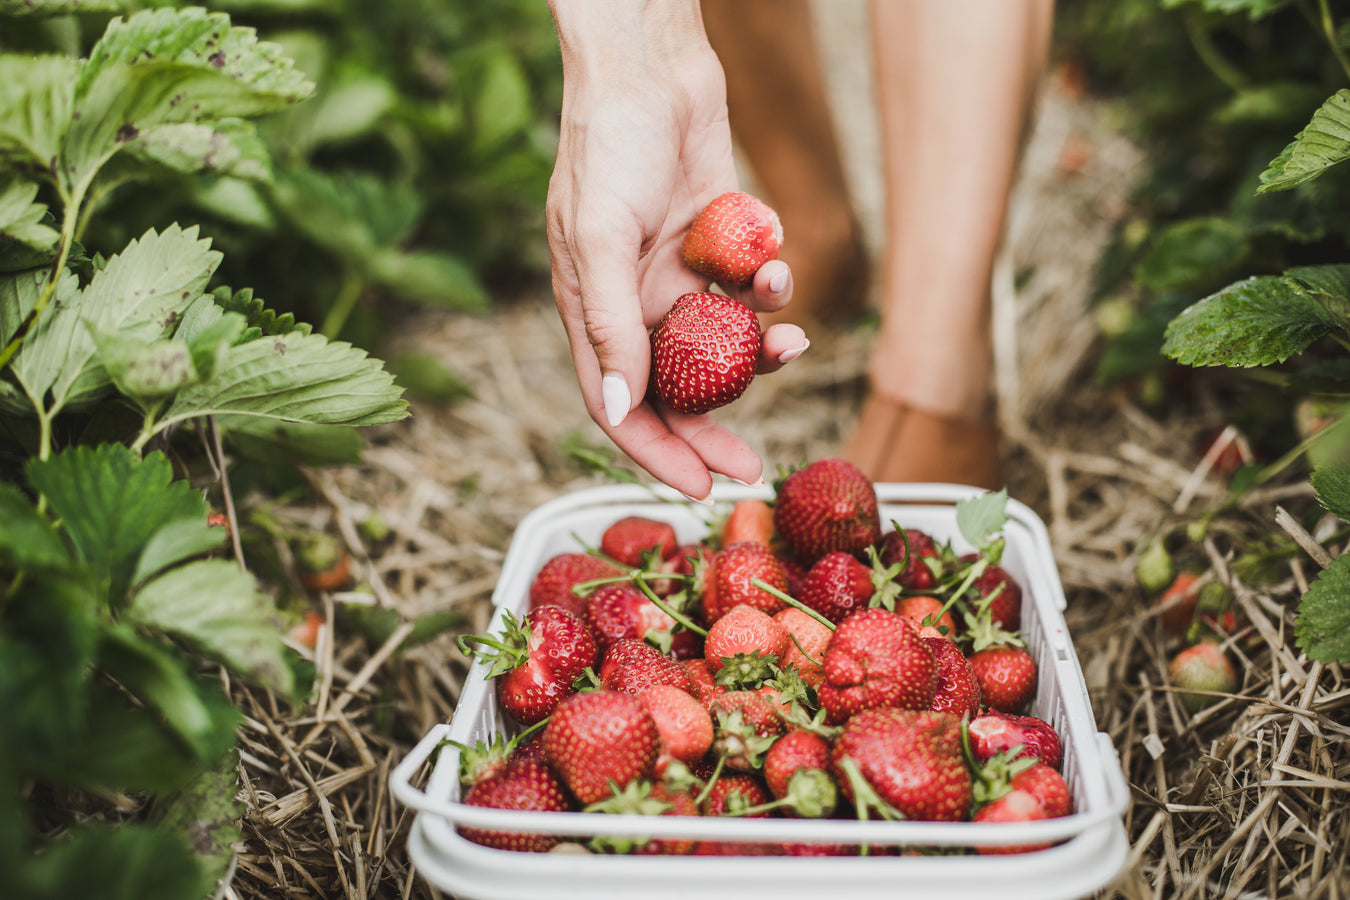 Det er muligt at besøge et pluk selv sted og selv plukke jordbær. Der findes mange forskellige jordbær og sorter i Danmark. Spørg plukselv stedet og find ud af hvad de tilbyder.